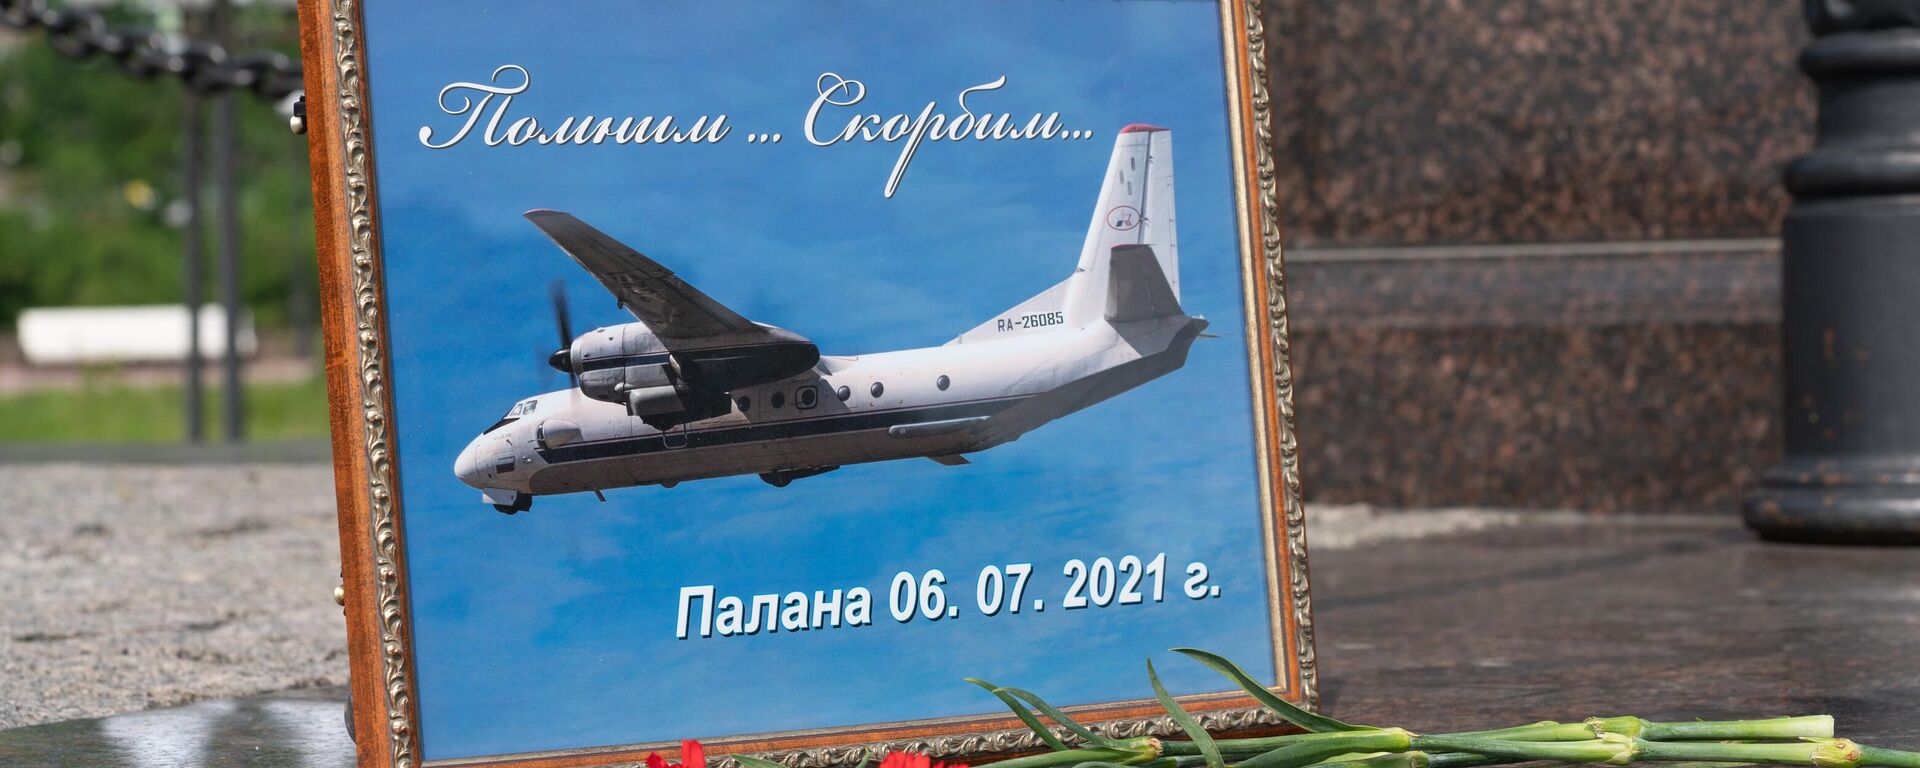 Homenaje al avión siniestrado en la península rusa de Kamchatka - Sputnik Mundo, 1920, 07.07.2021